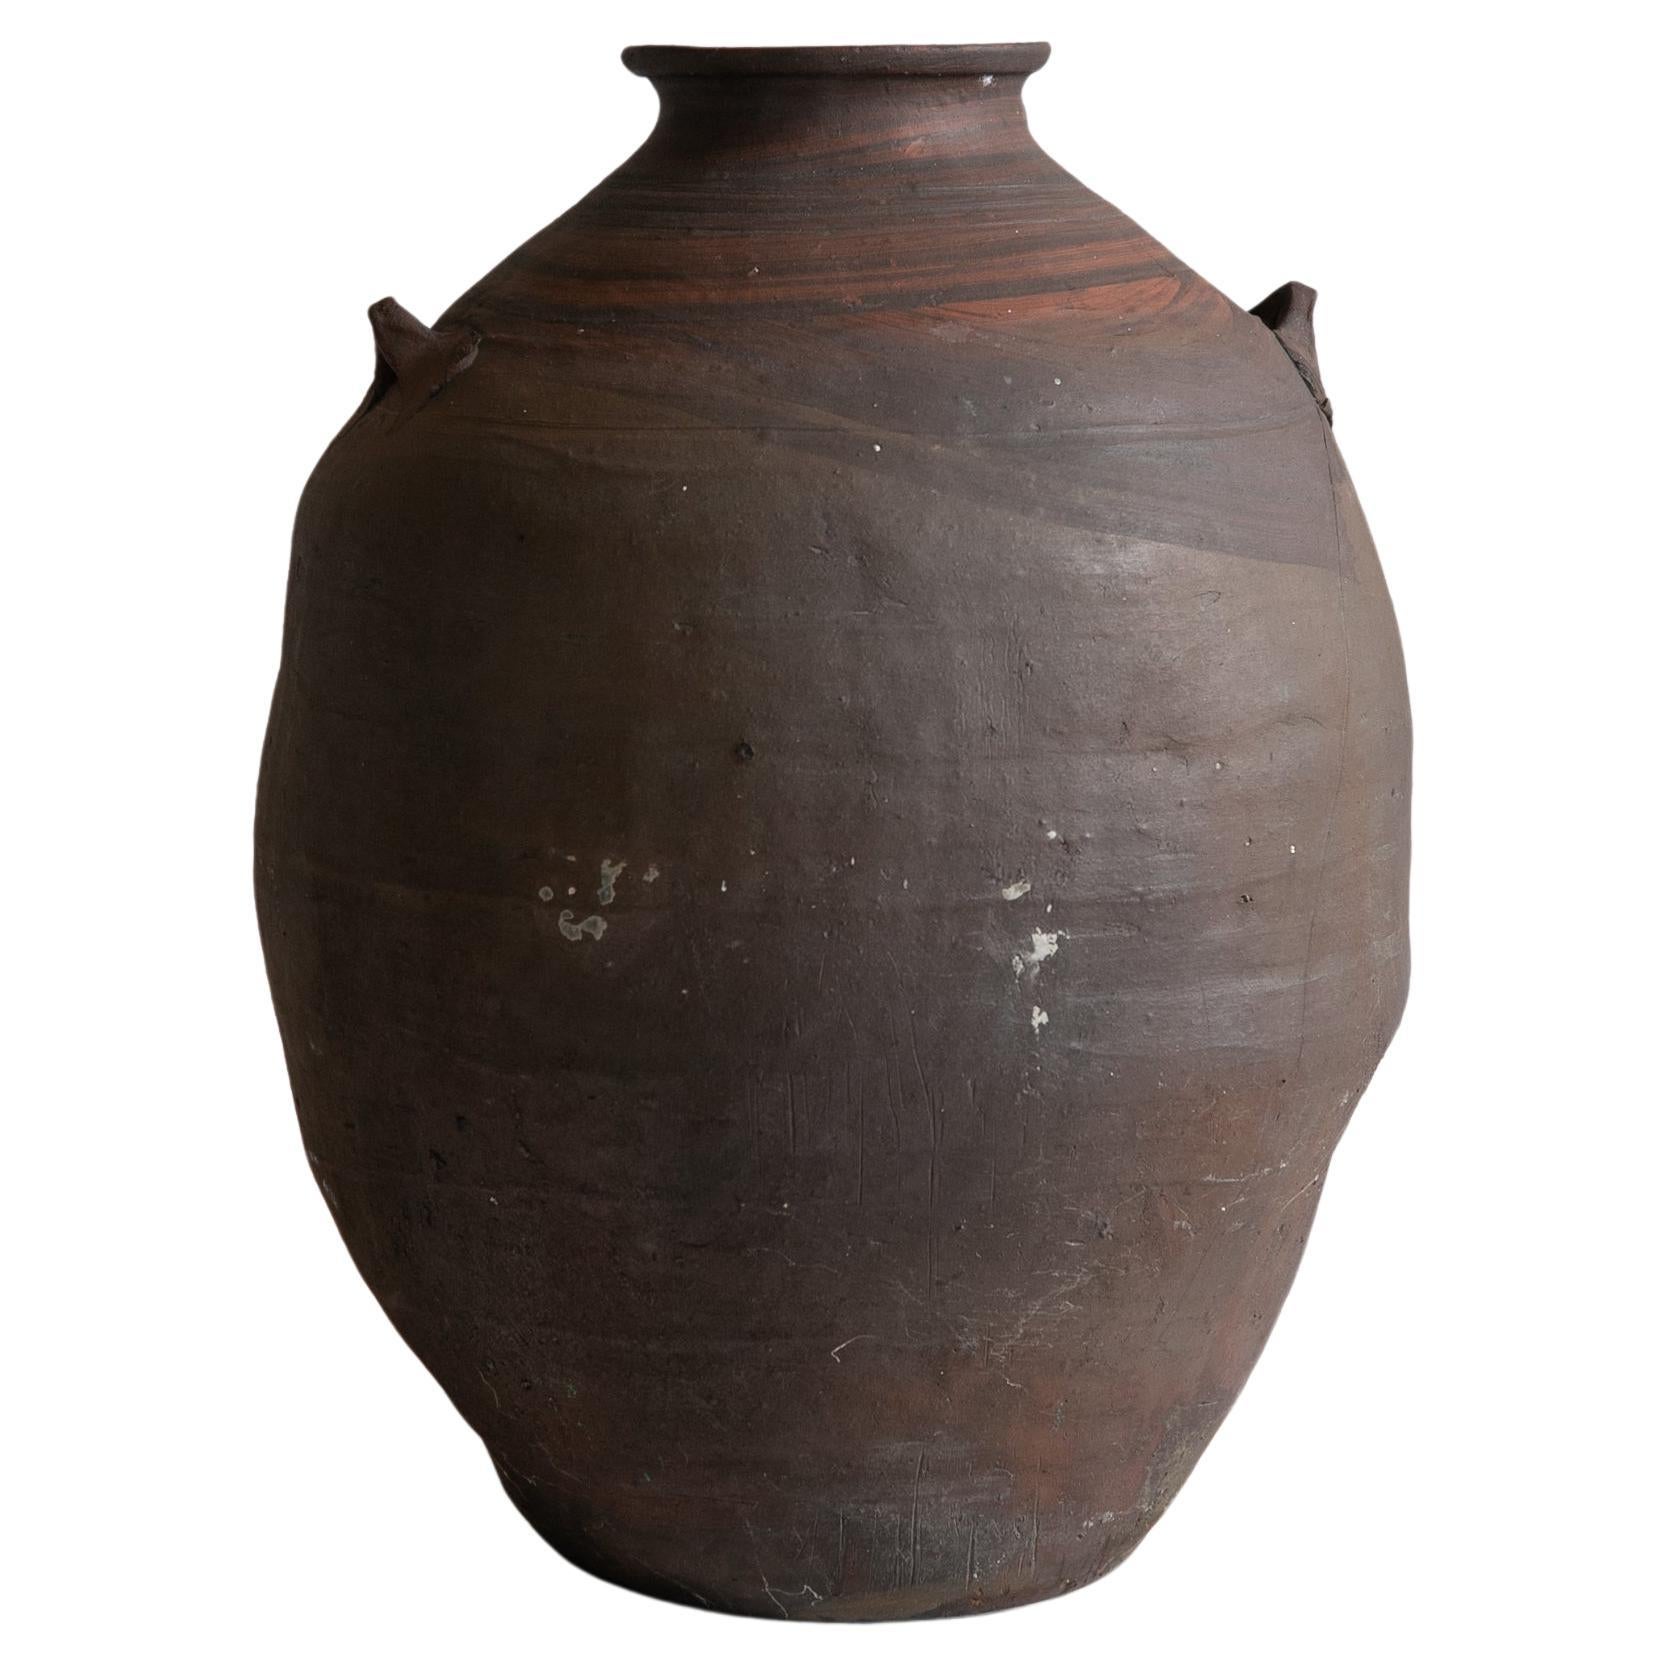 Japanisches antikes japanisches Gefäß / 1900er Jahre / Atmosphere Cool Vase / Wabisabi Art / Mingei